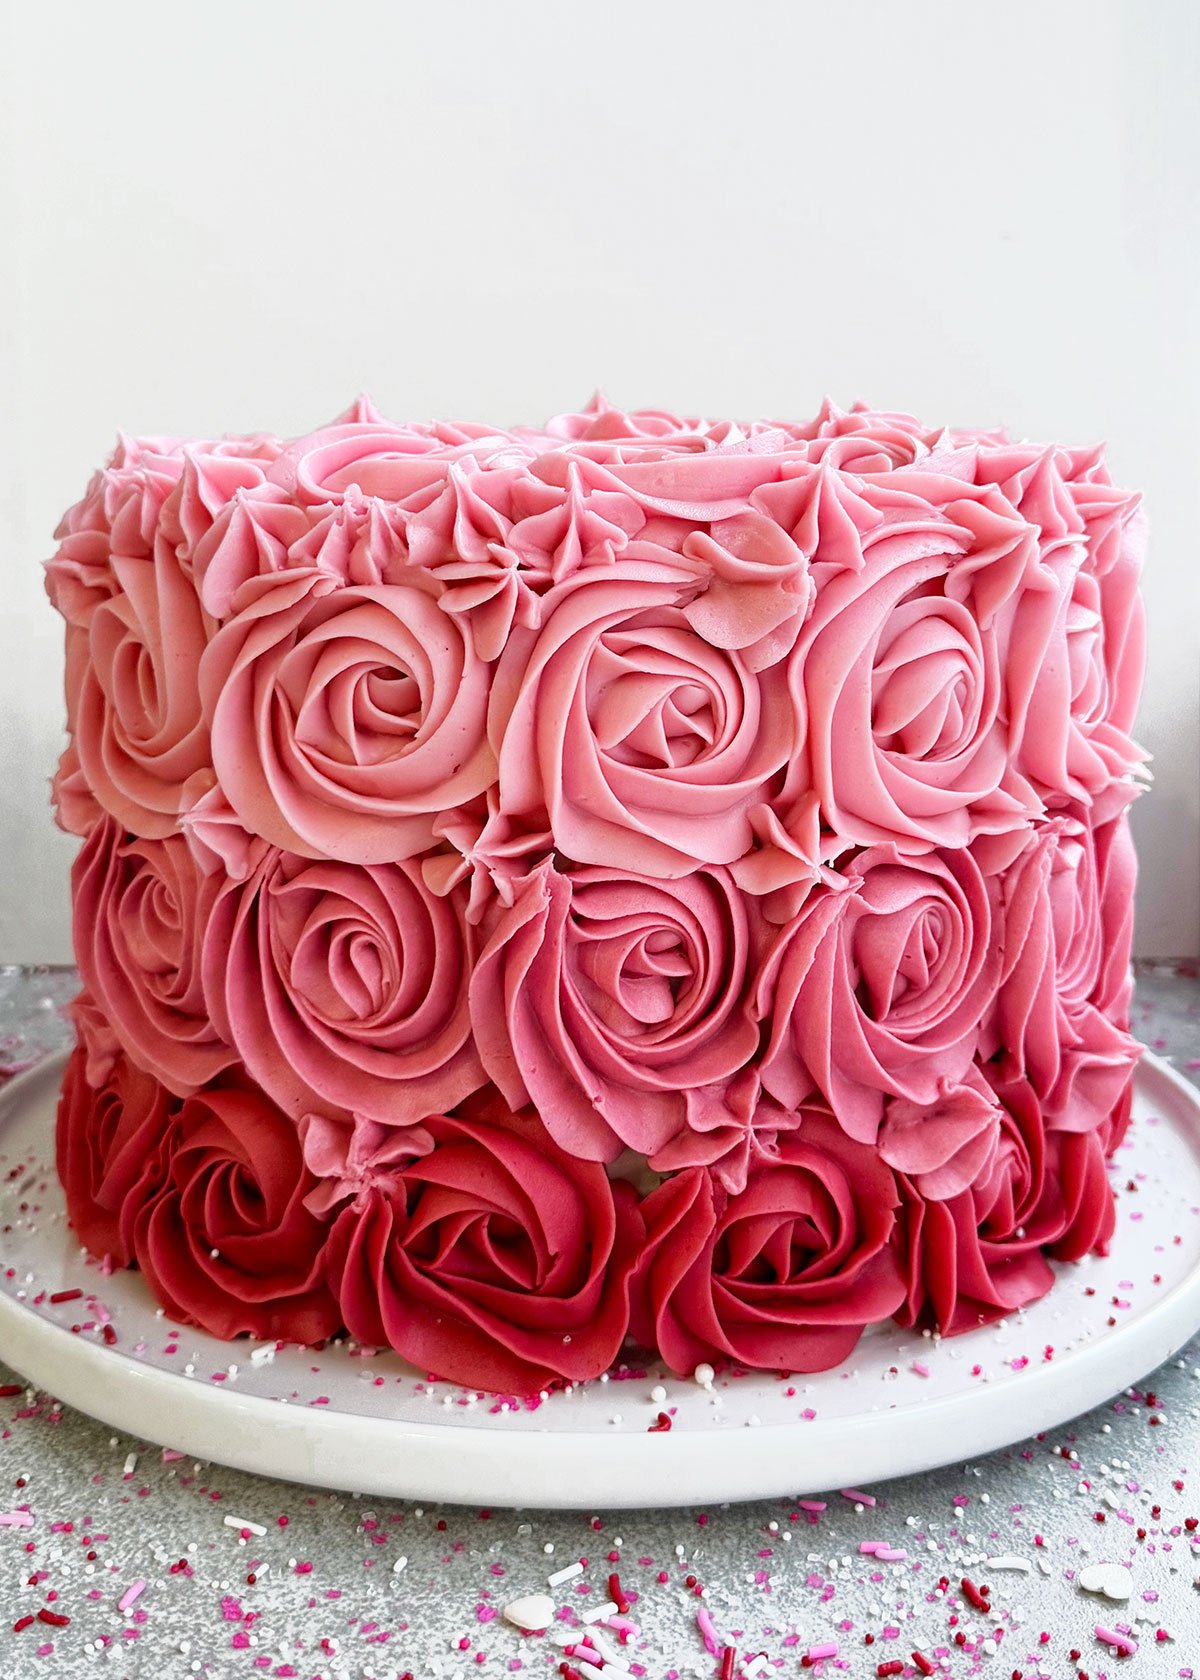 Red Velvet Ombre Cake | Fun twist on a classic red velvet cake!